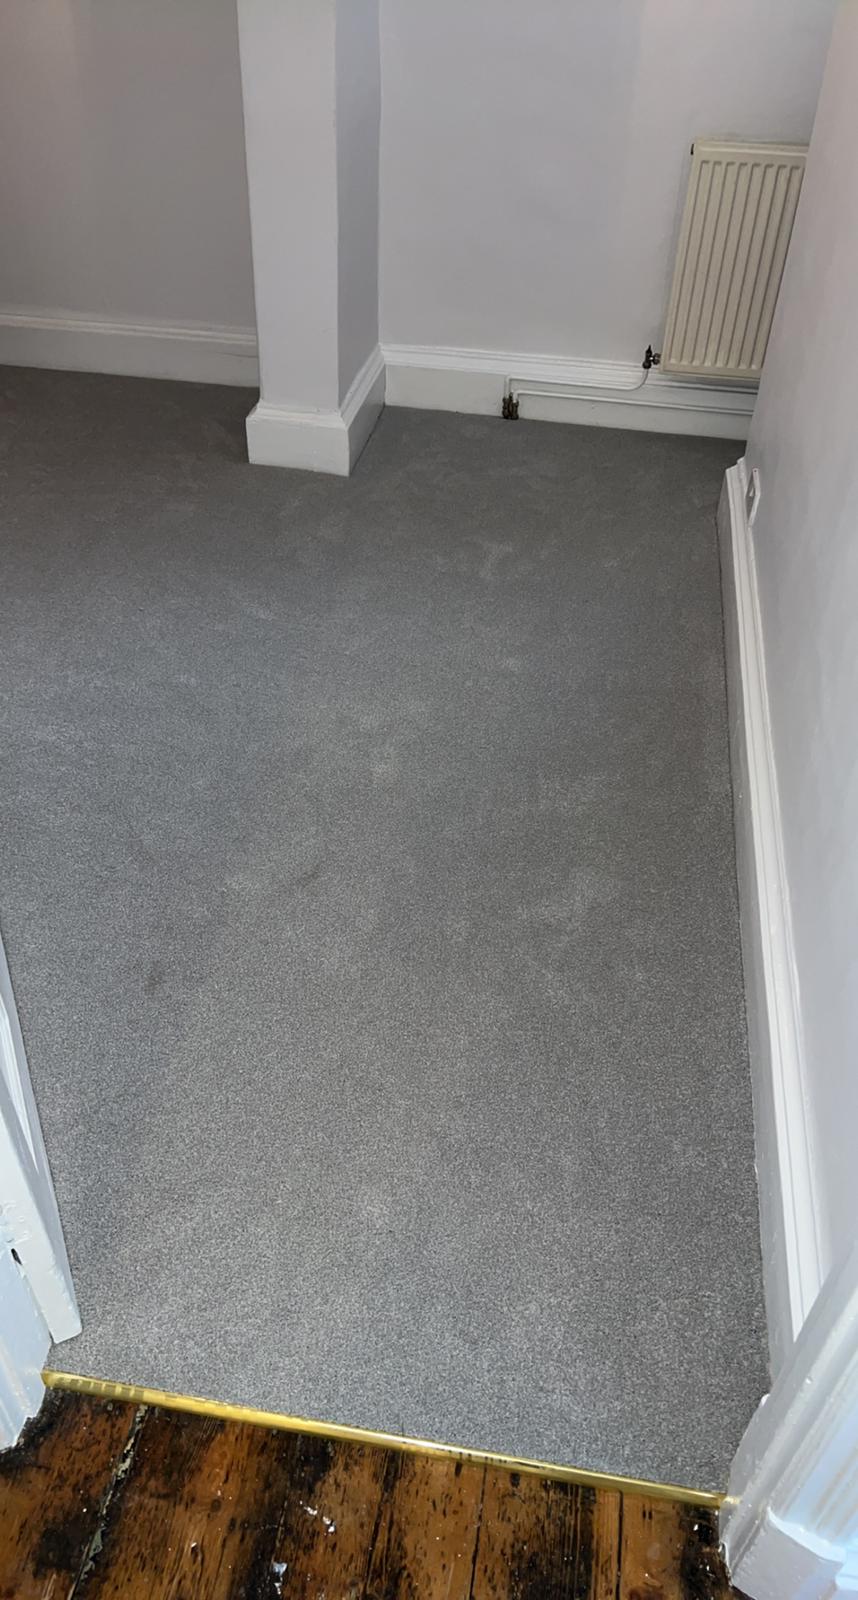 Avonvale Carpets - Lansdown - Bath - Apartment - Carpet - Rental - Furlong - Polyprop - Polypropylene - 5